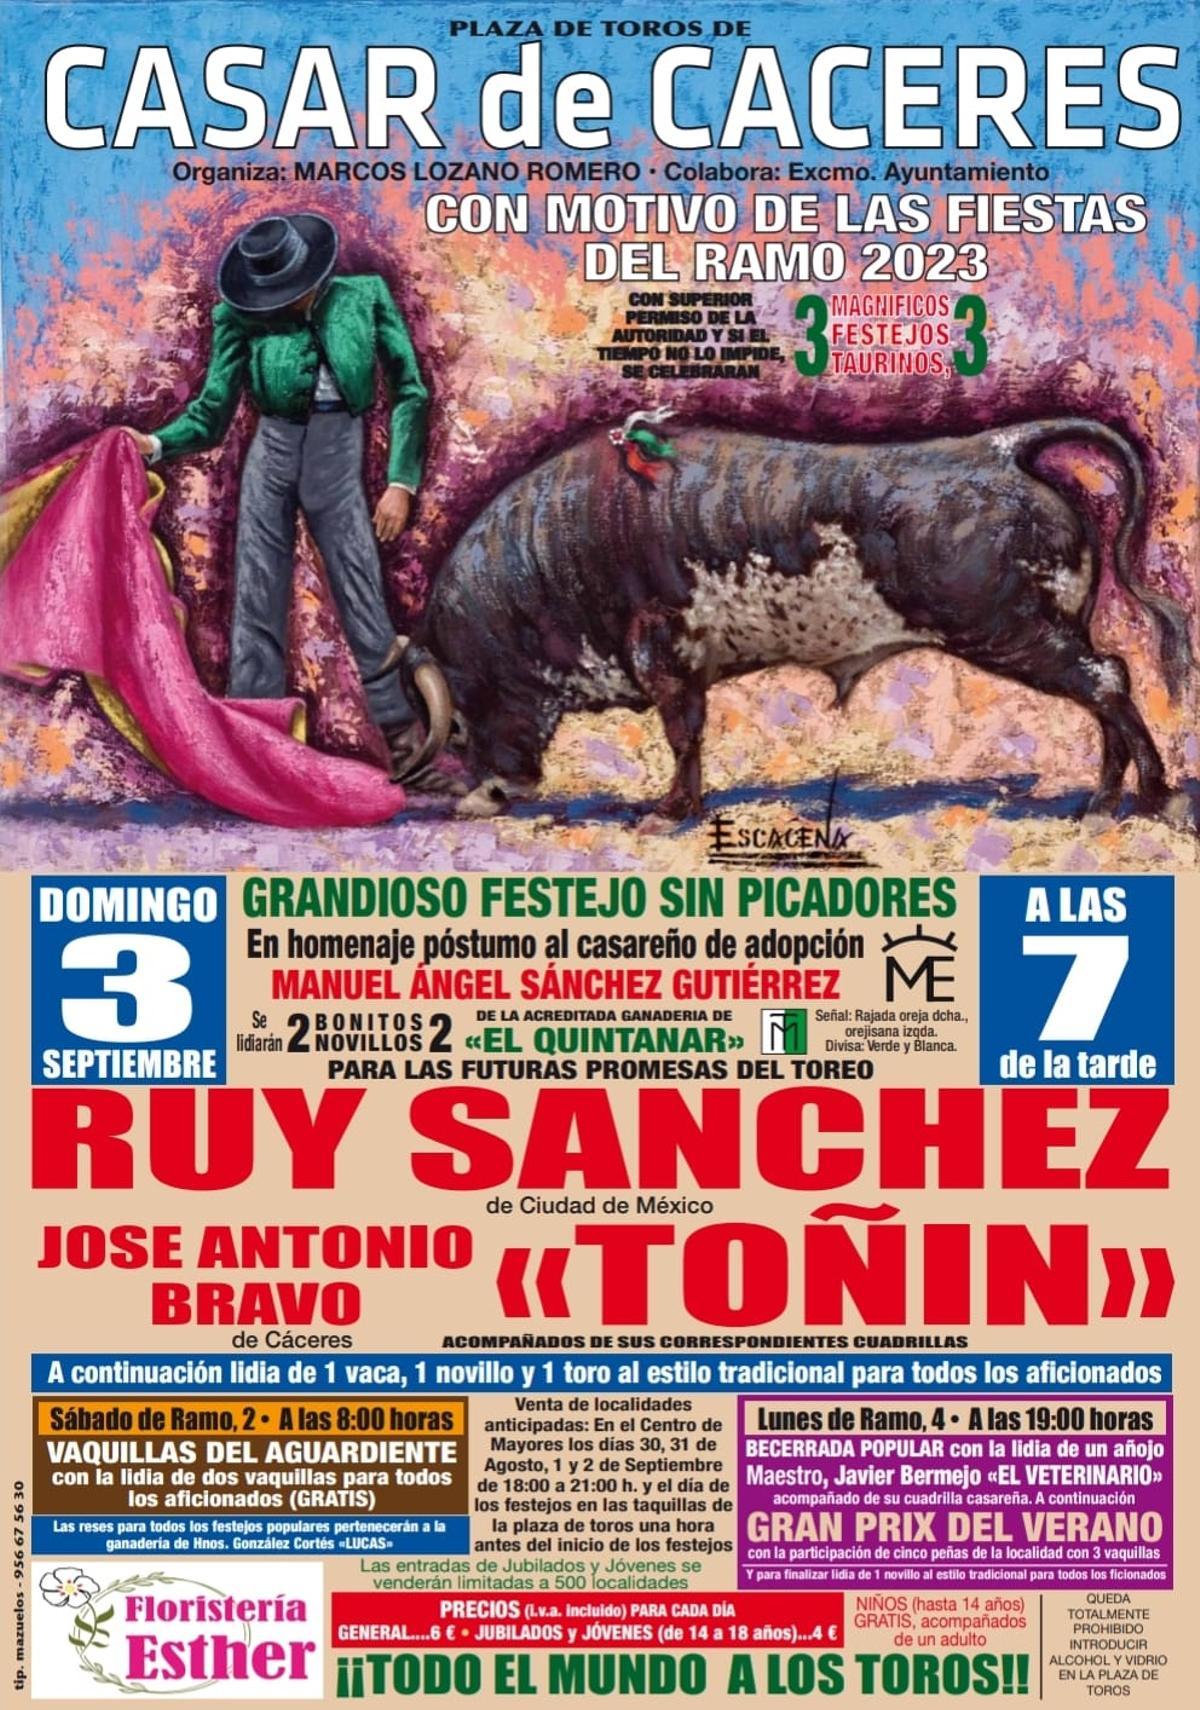 Cartel de Toros de las Fiestas del Ramo de Casar de Cáceres 2023.